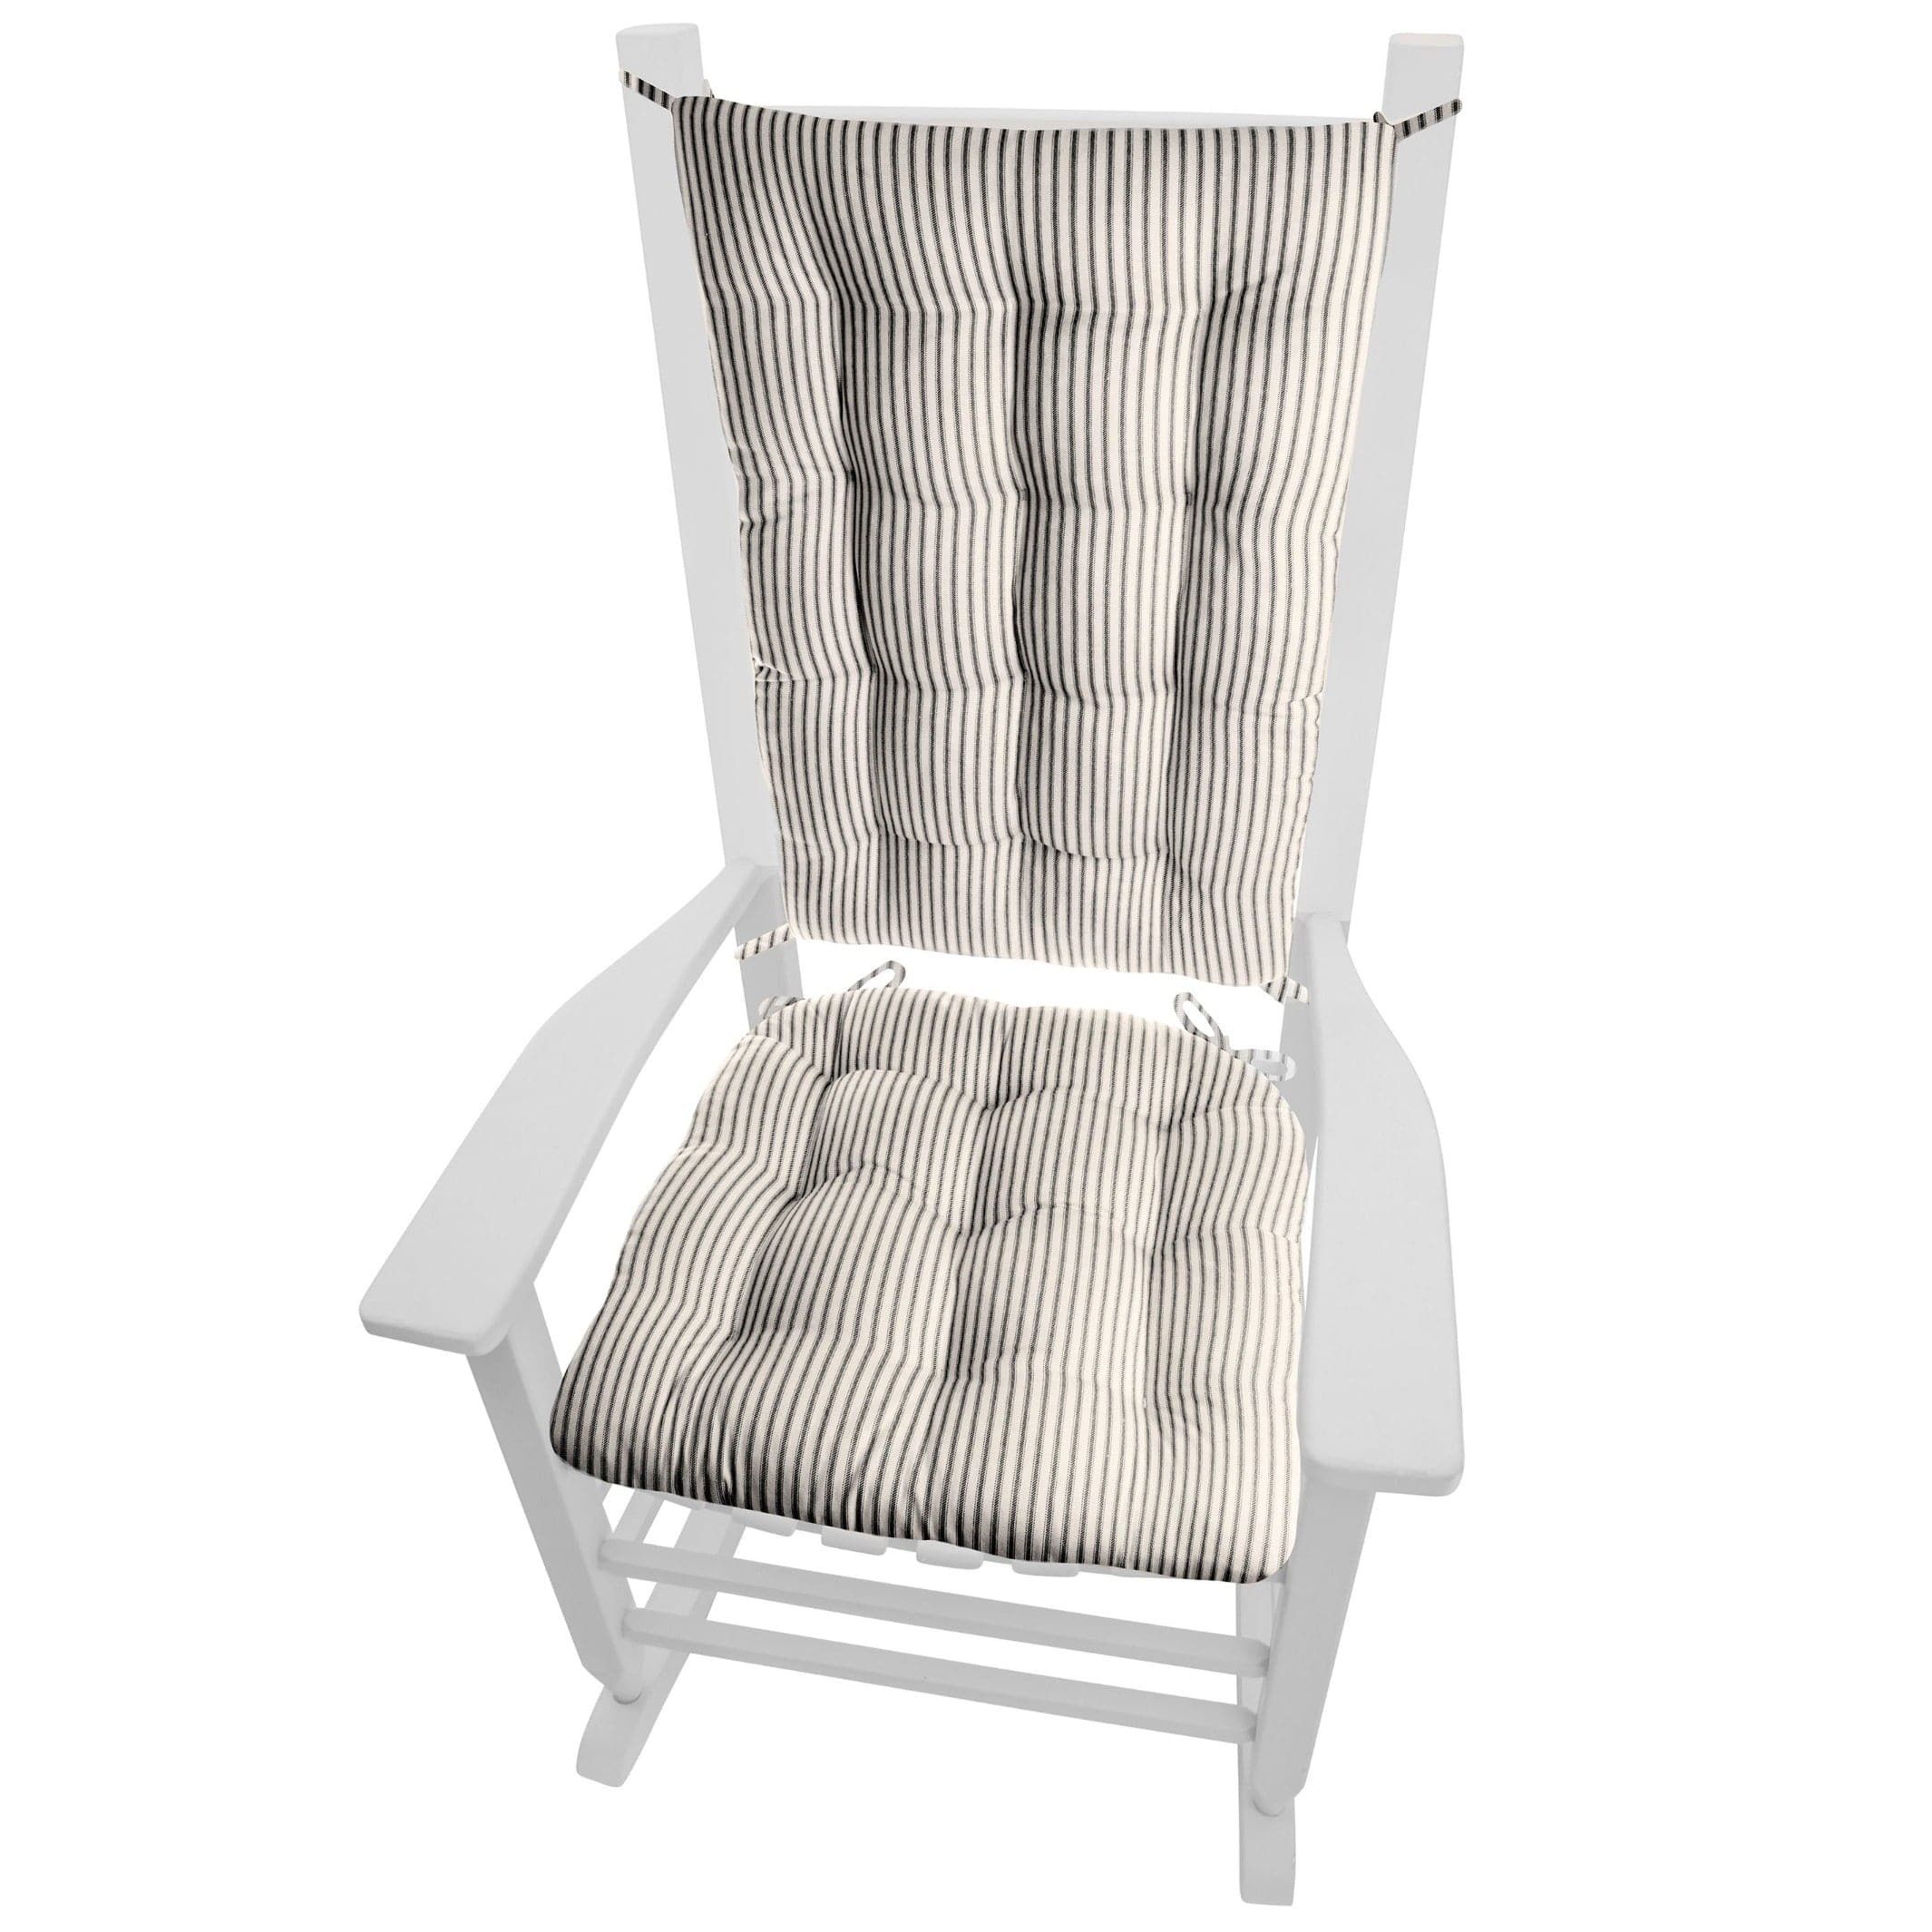 Handmade Cotton Chair Pads Cushion 19''x19'', 3'' Thick